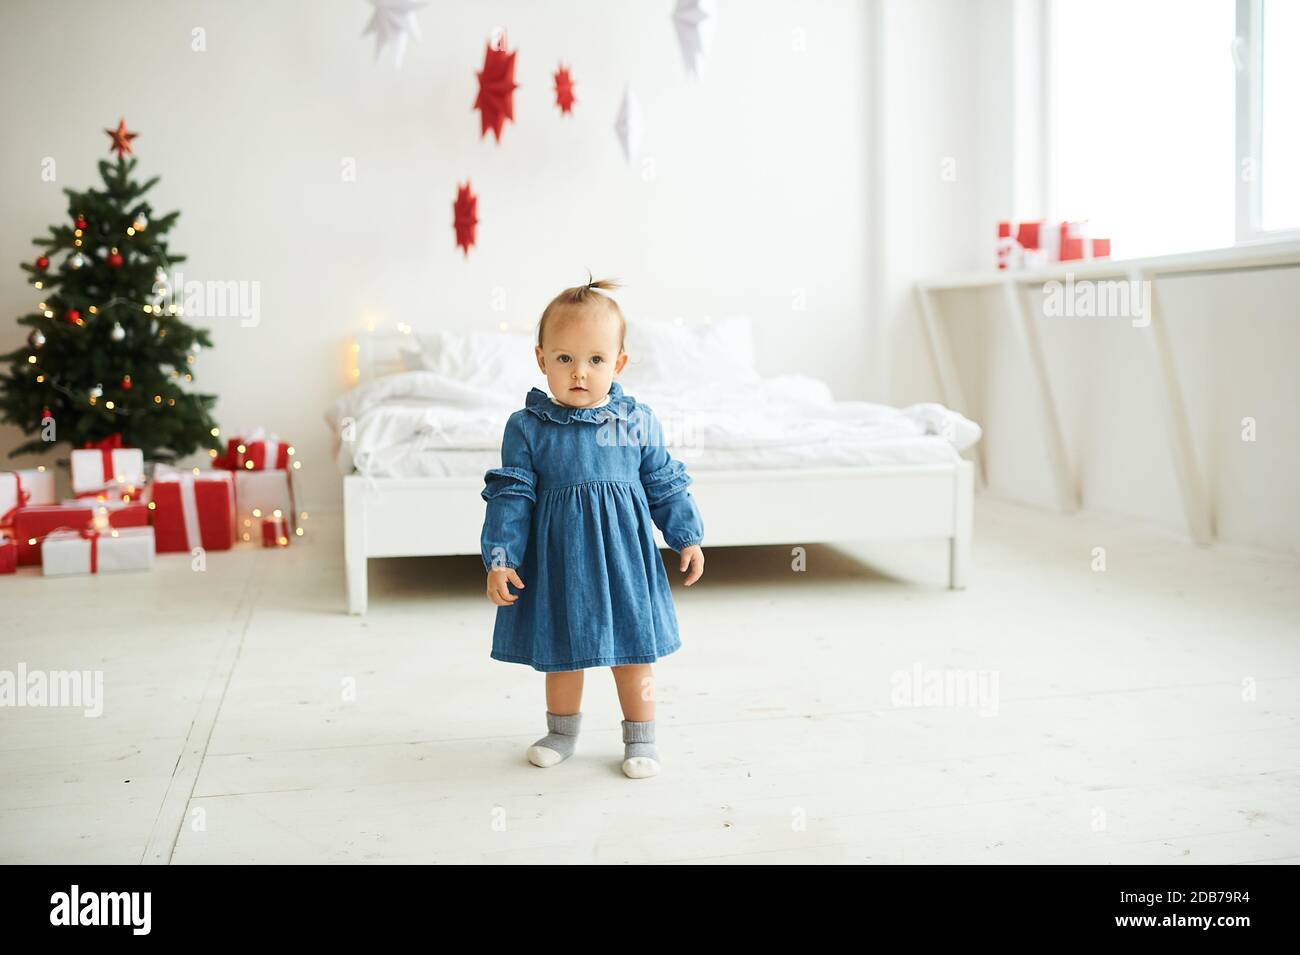 Porträt eines kleinen Mädchen in einem blauen Denim-Kleid in einem hellen Raum gekleidet. Stockfoto